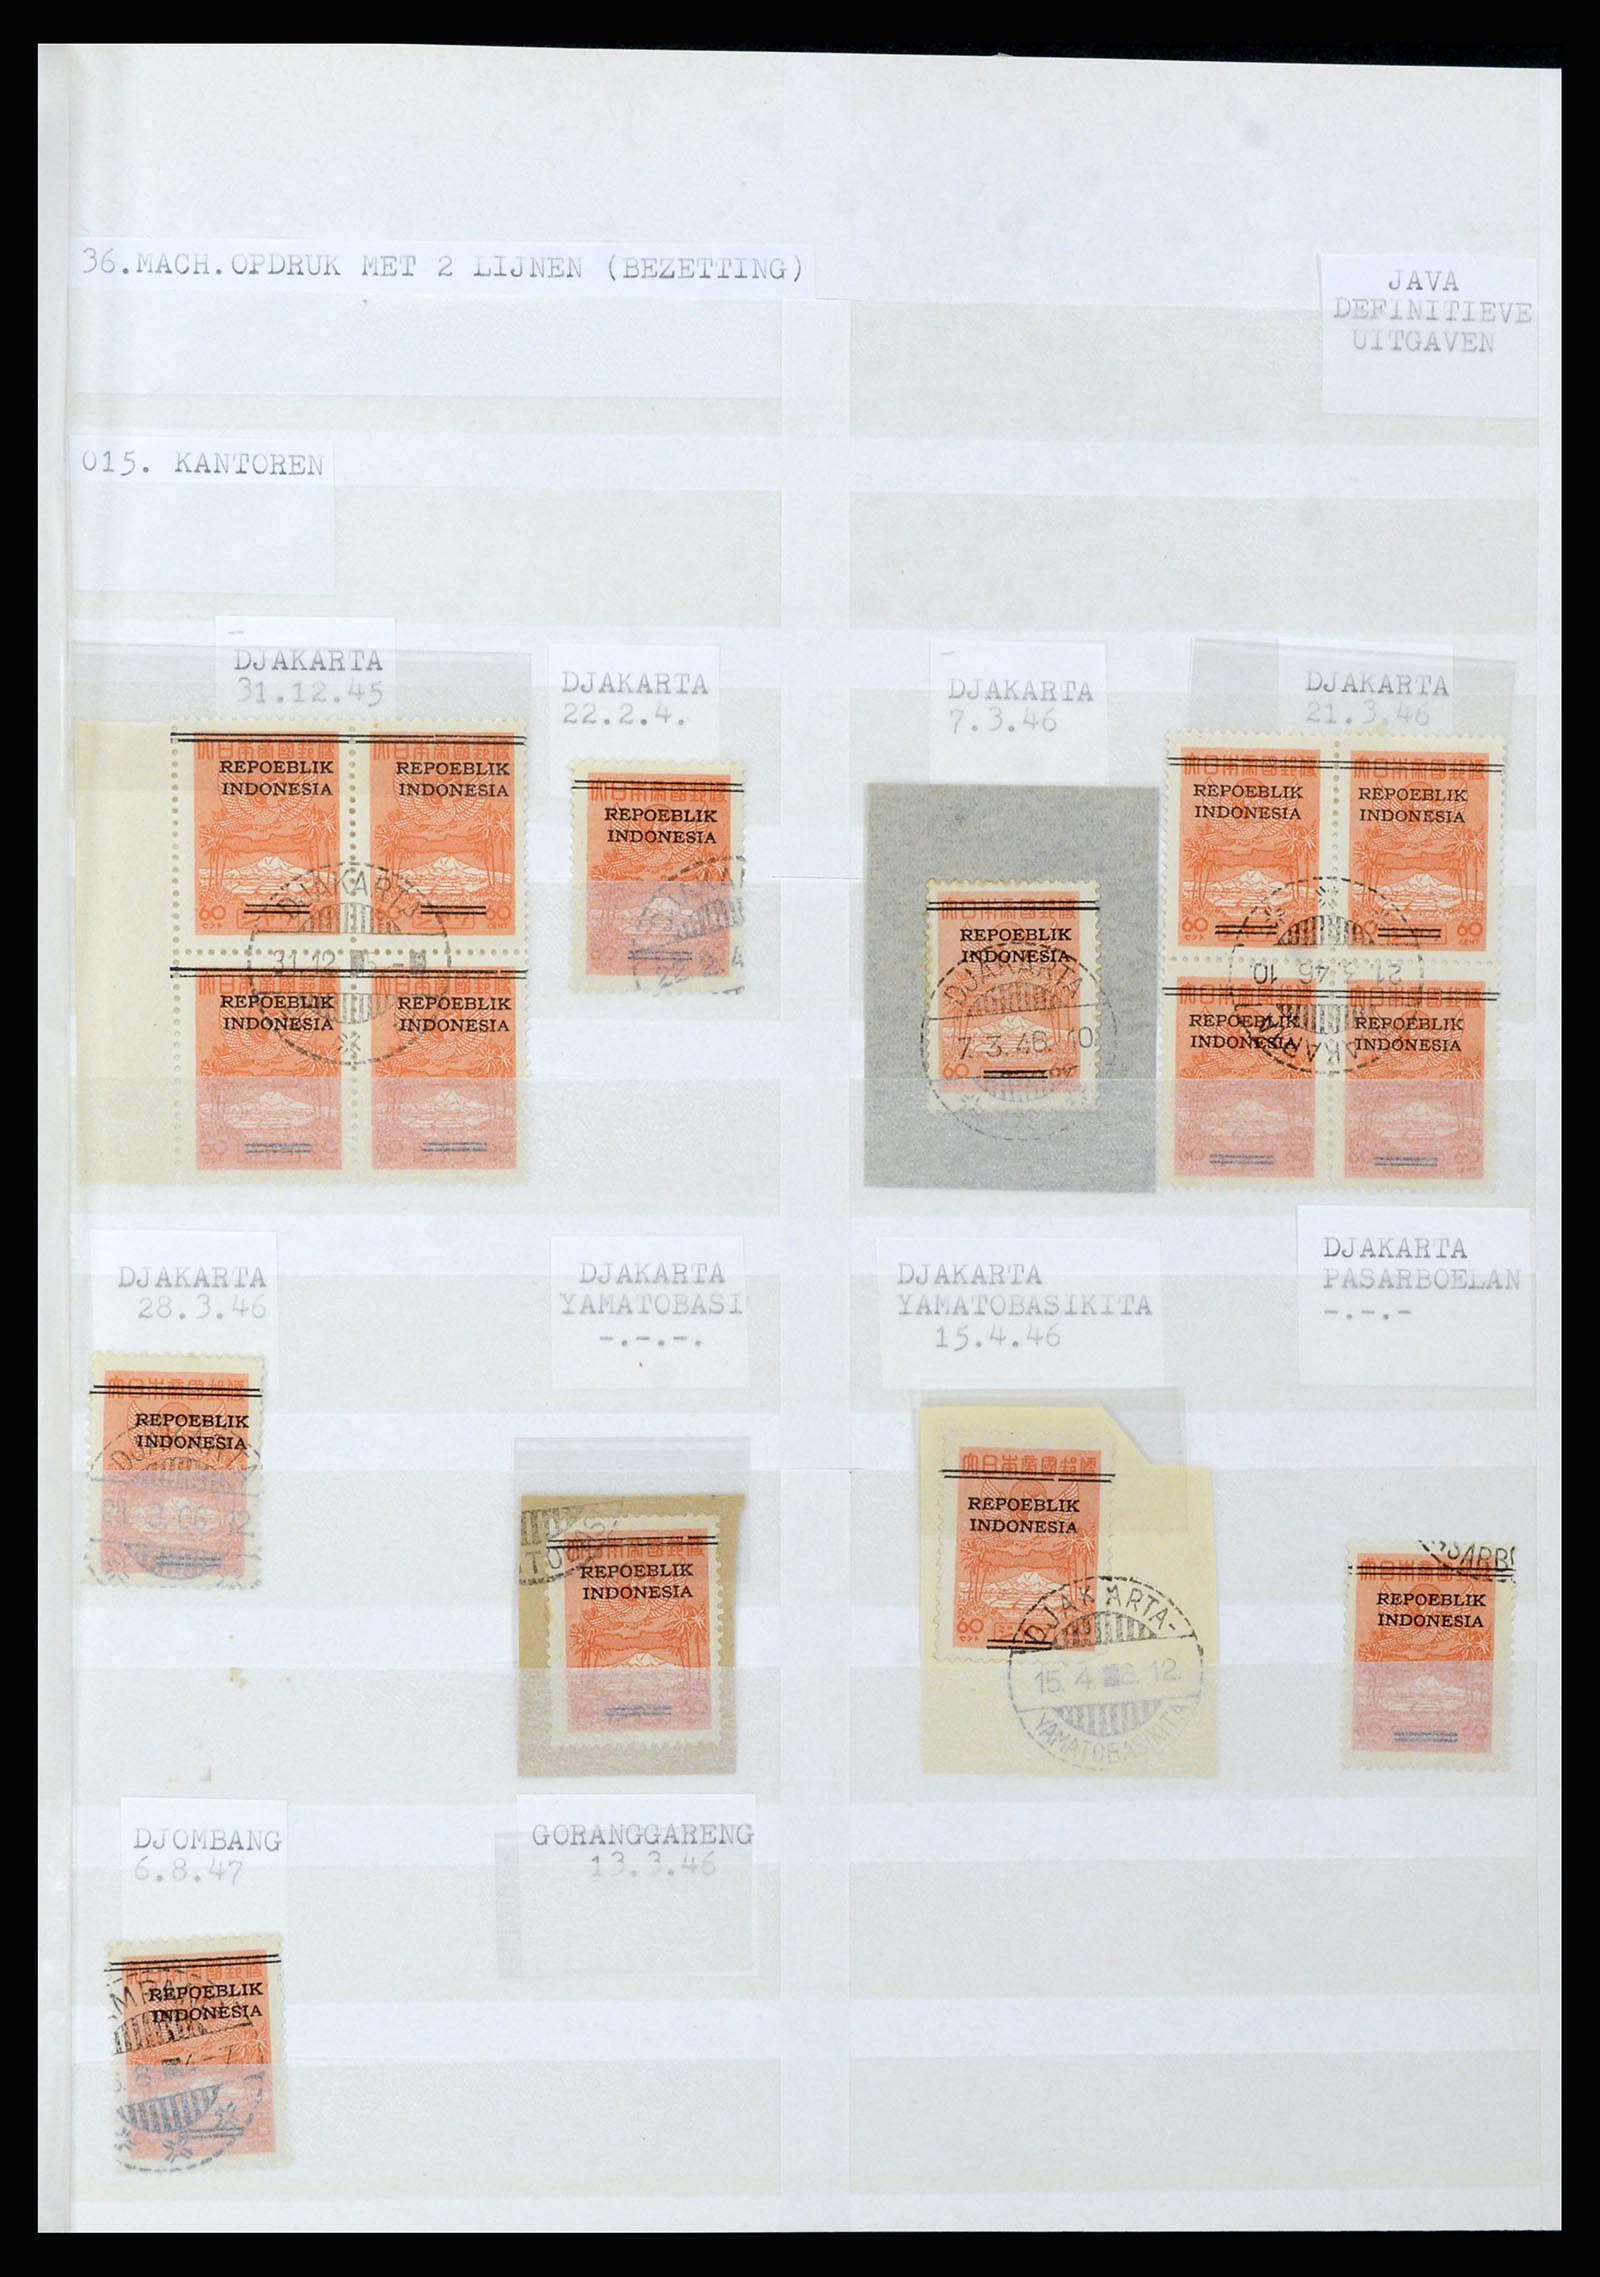 36742 063 - Stamp collection 36742 Dutch Indies interim period 1945-1949.